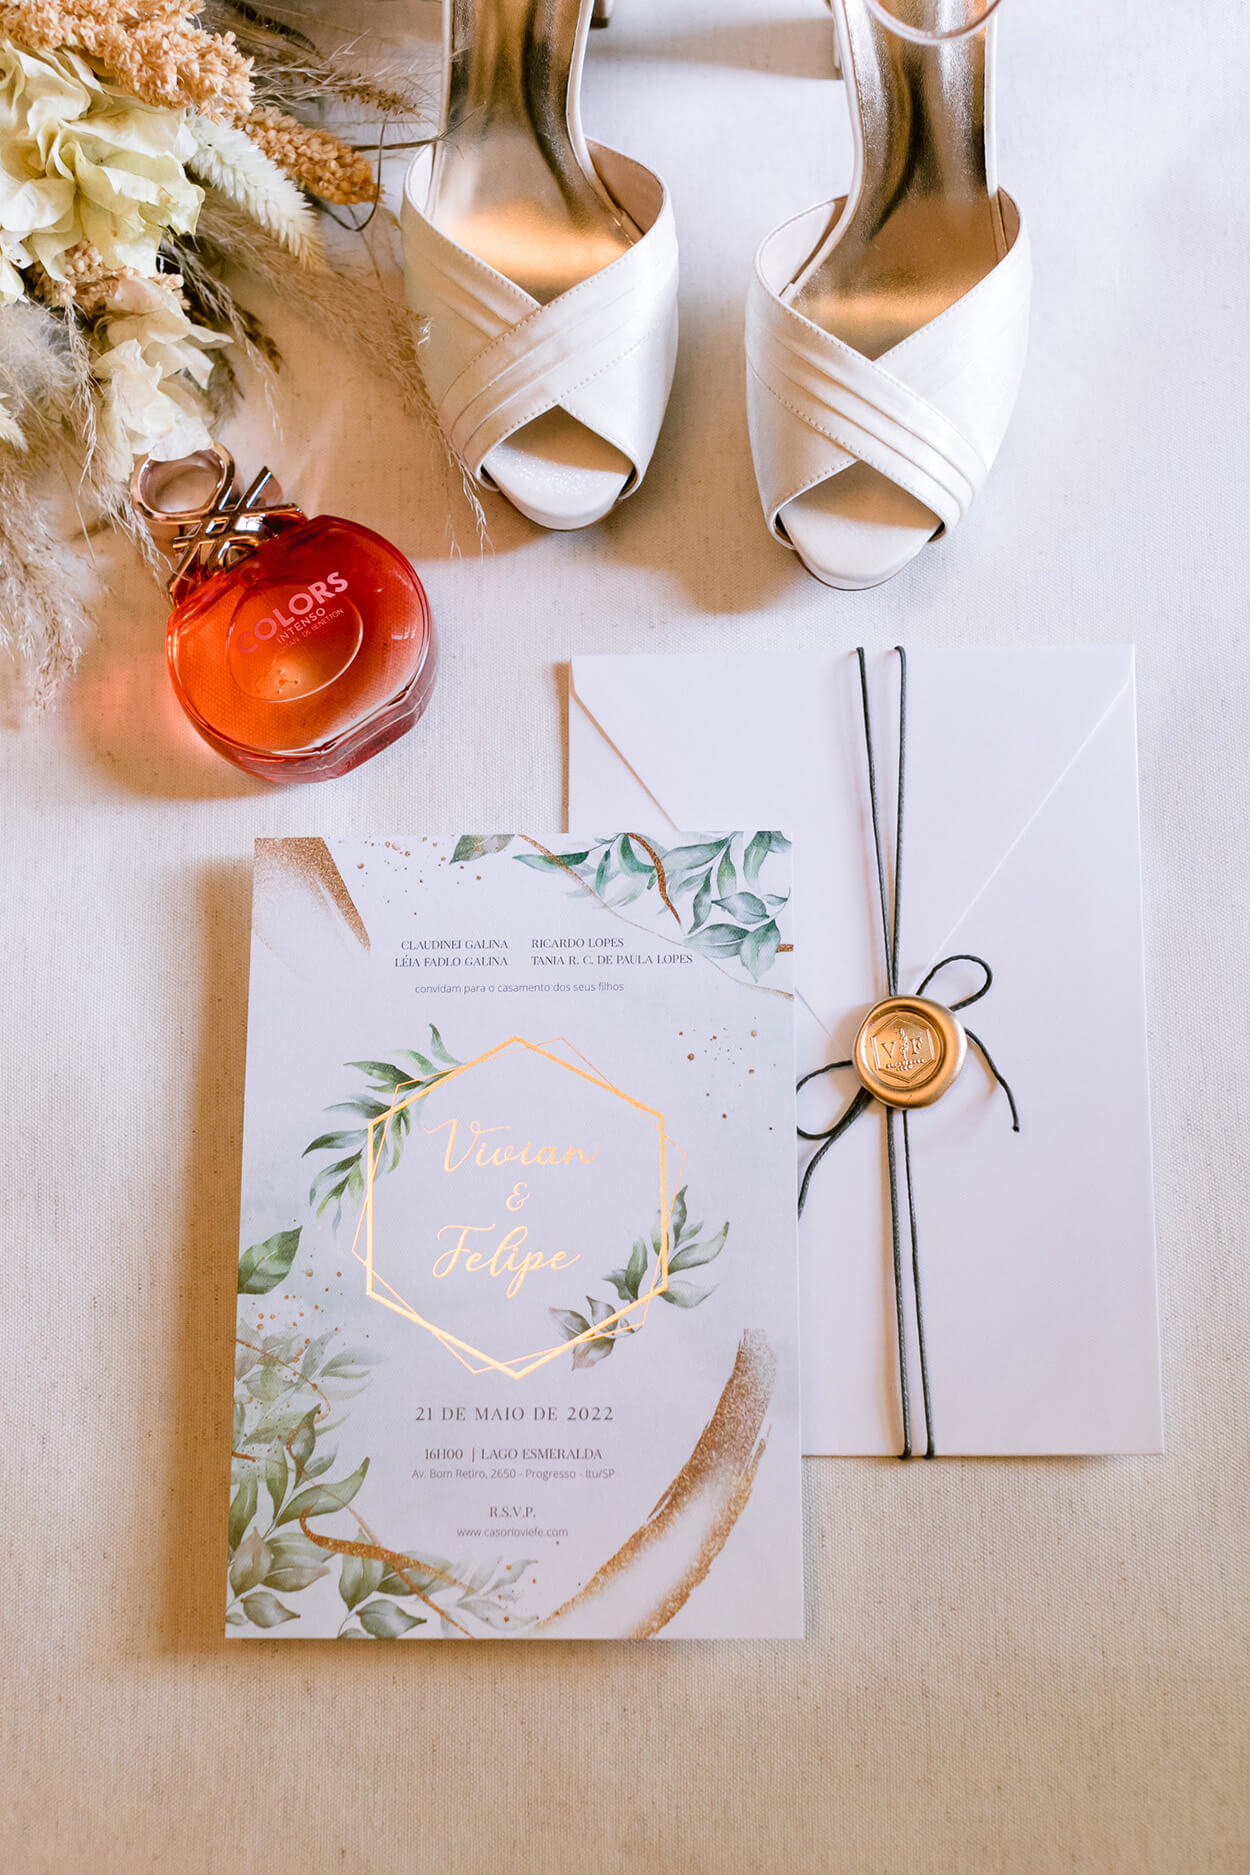 Sandália brnaca peep toe com perfume vermelho e ocnvite de casamento branco com tem floral e detalhes em dourado